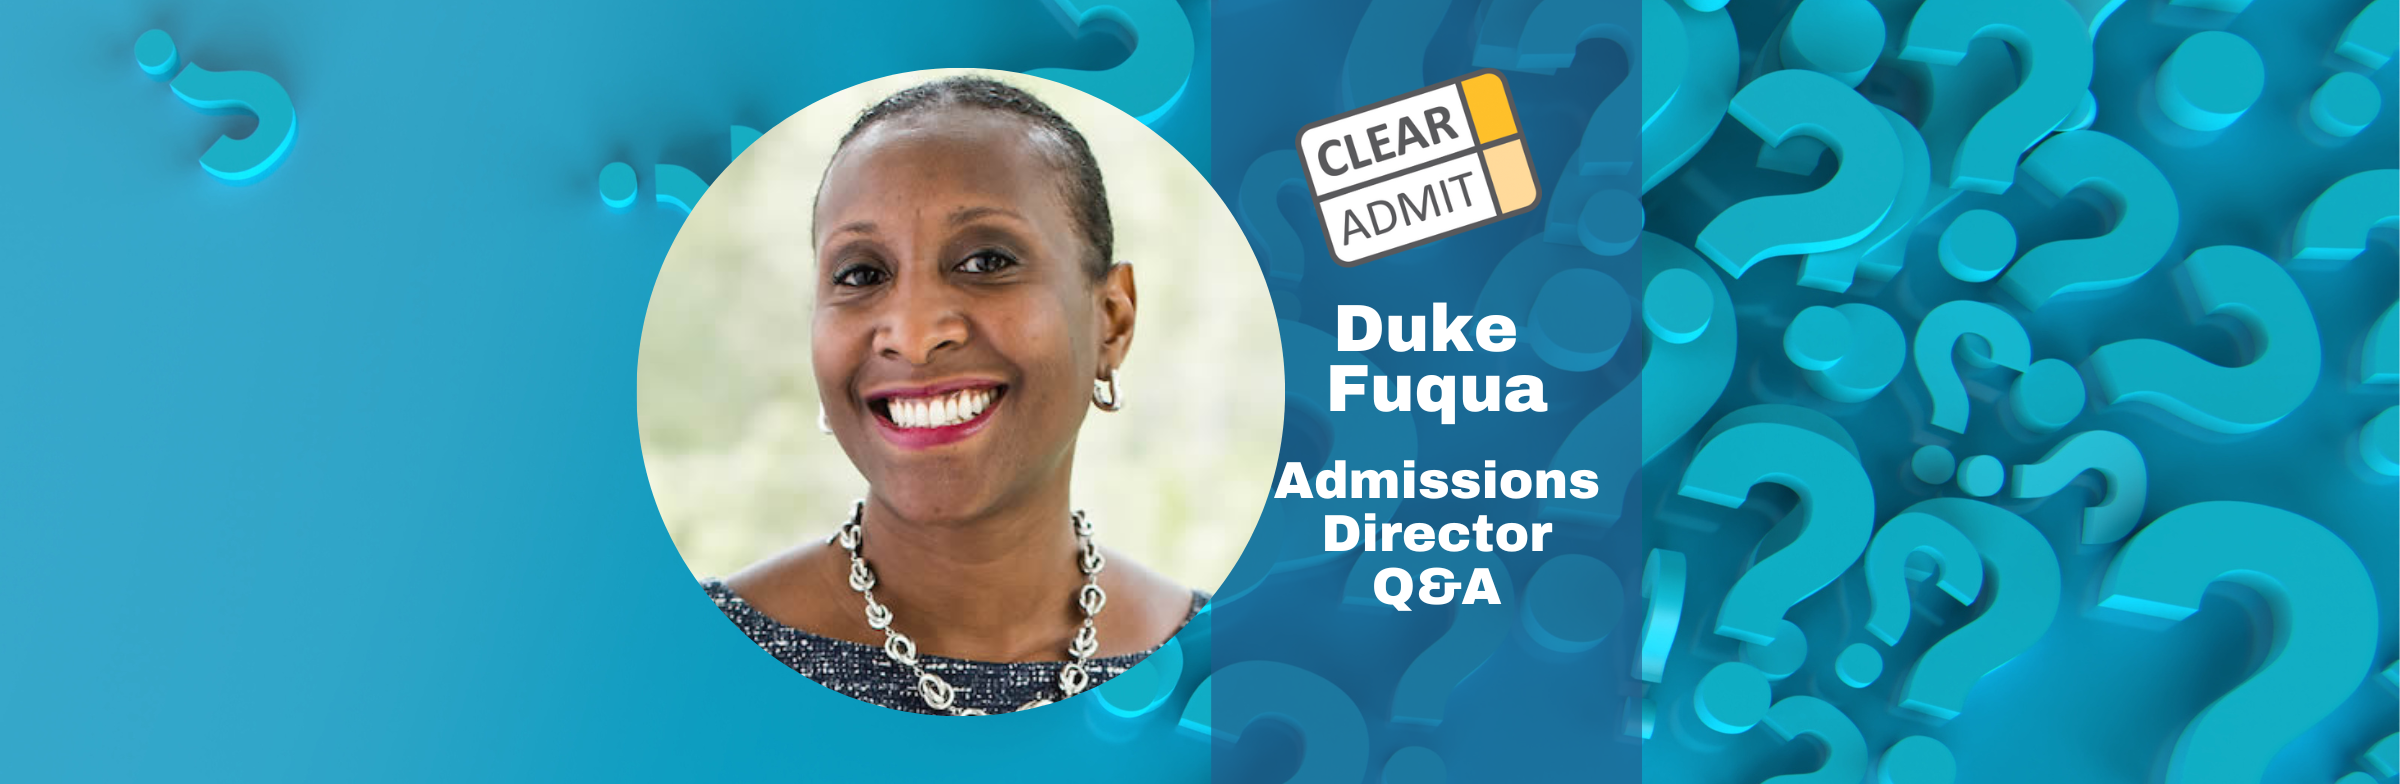 Image for Admissions Director Q&A: Shari Hubert of Duke Fuqua